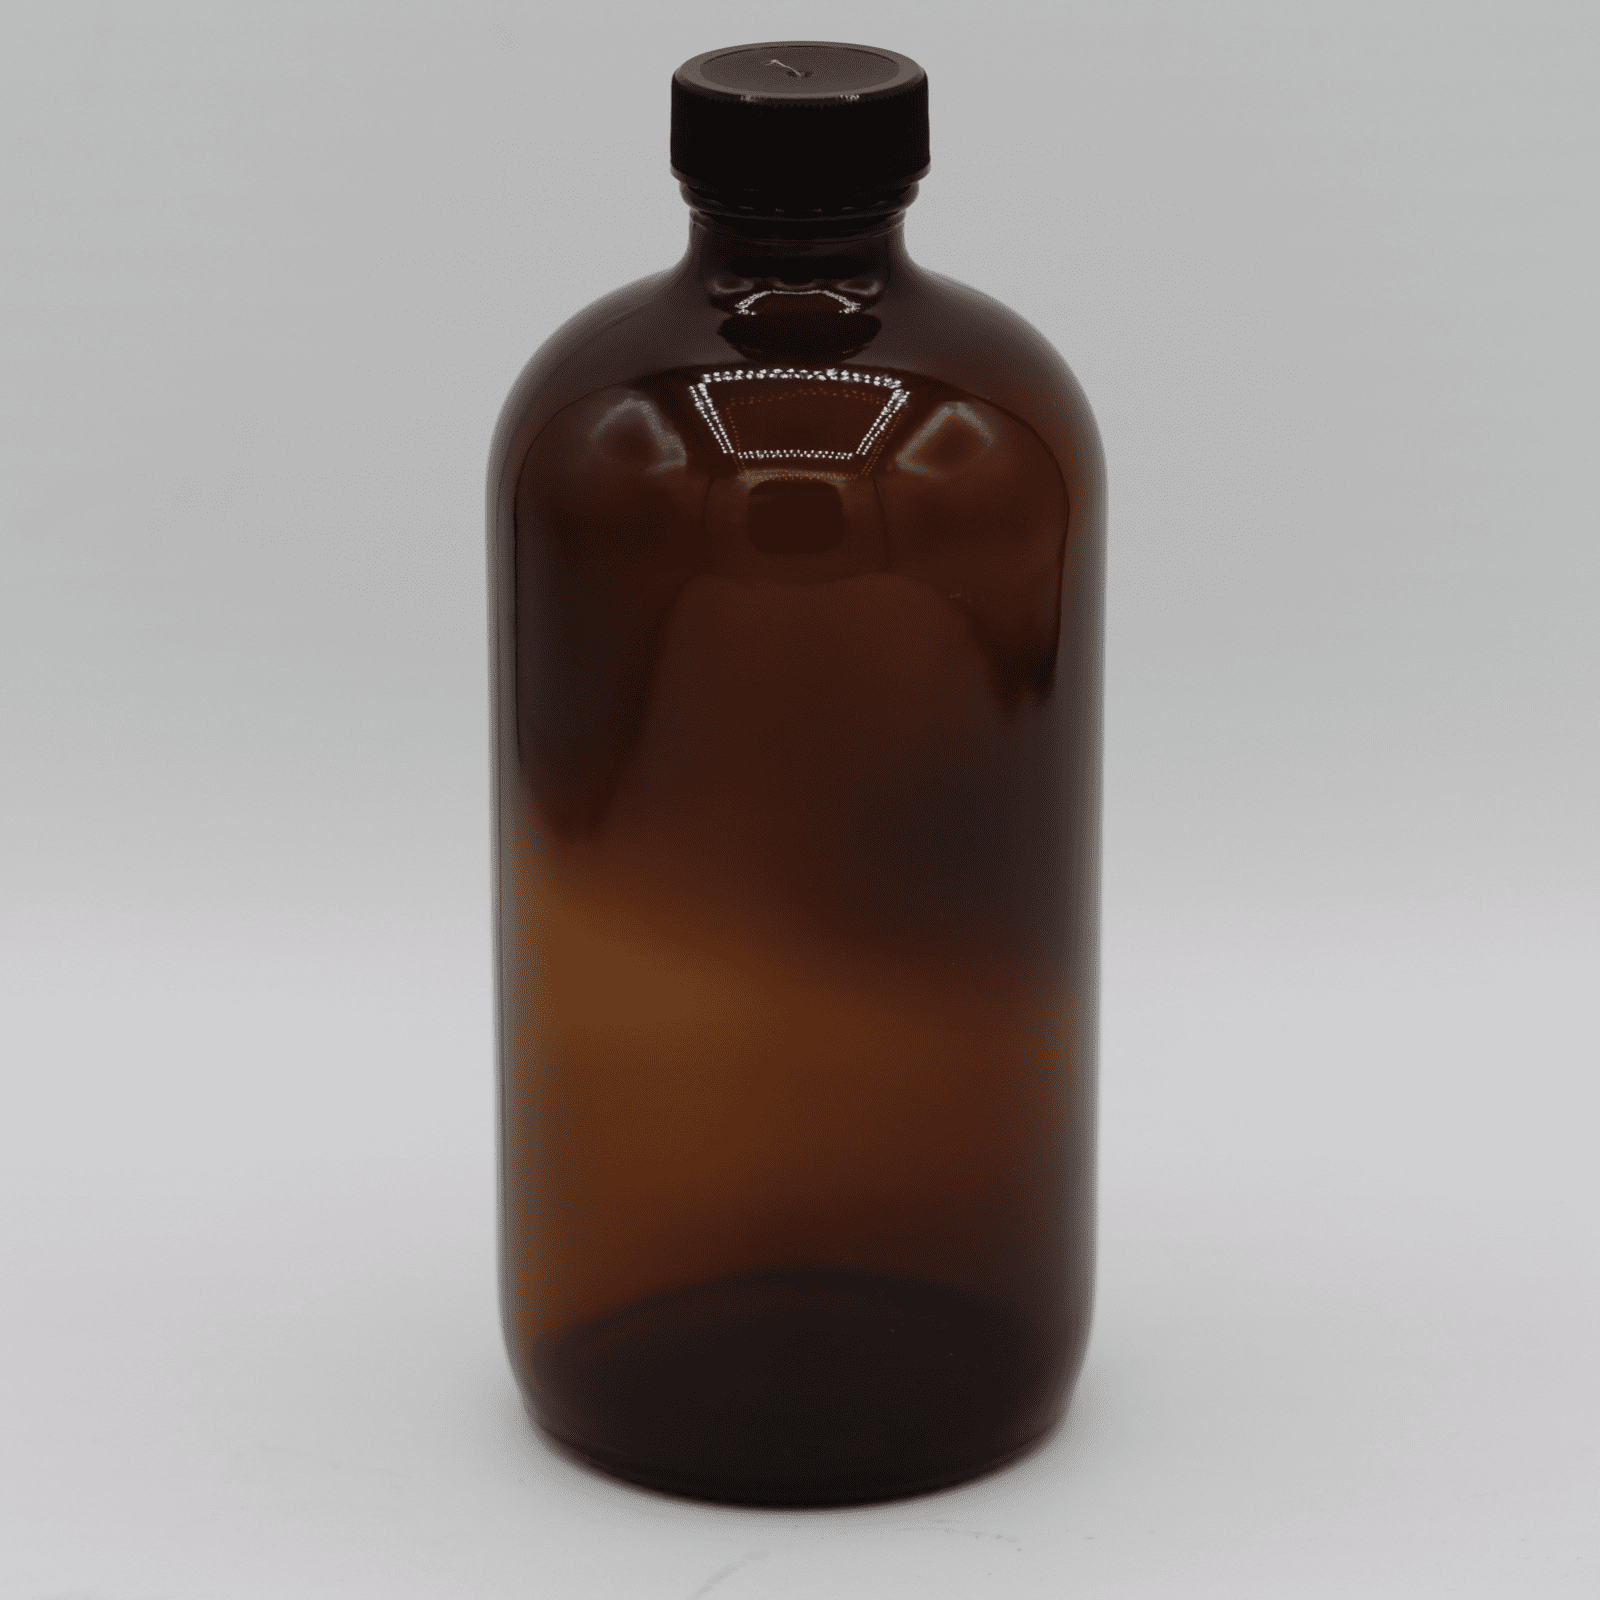 Refillable Bottles